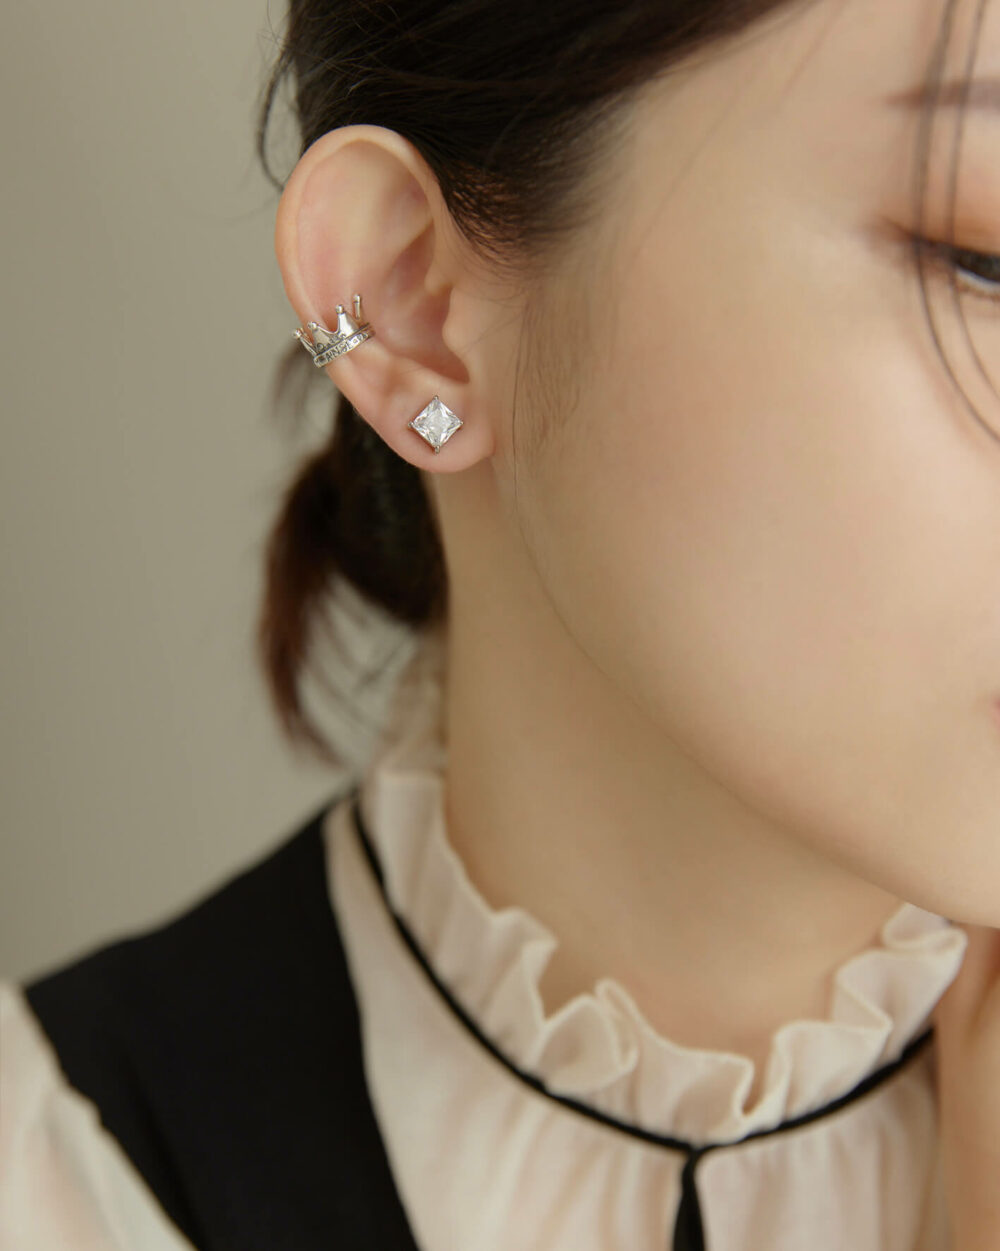 Eco安珂,韓國飾品,韓國耳環,韓國925純銀耳環,925純銀耳環,純銀耳骨夾,925純銀耳骨夾,皇冠耳骨夾